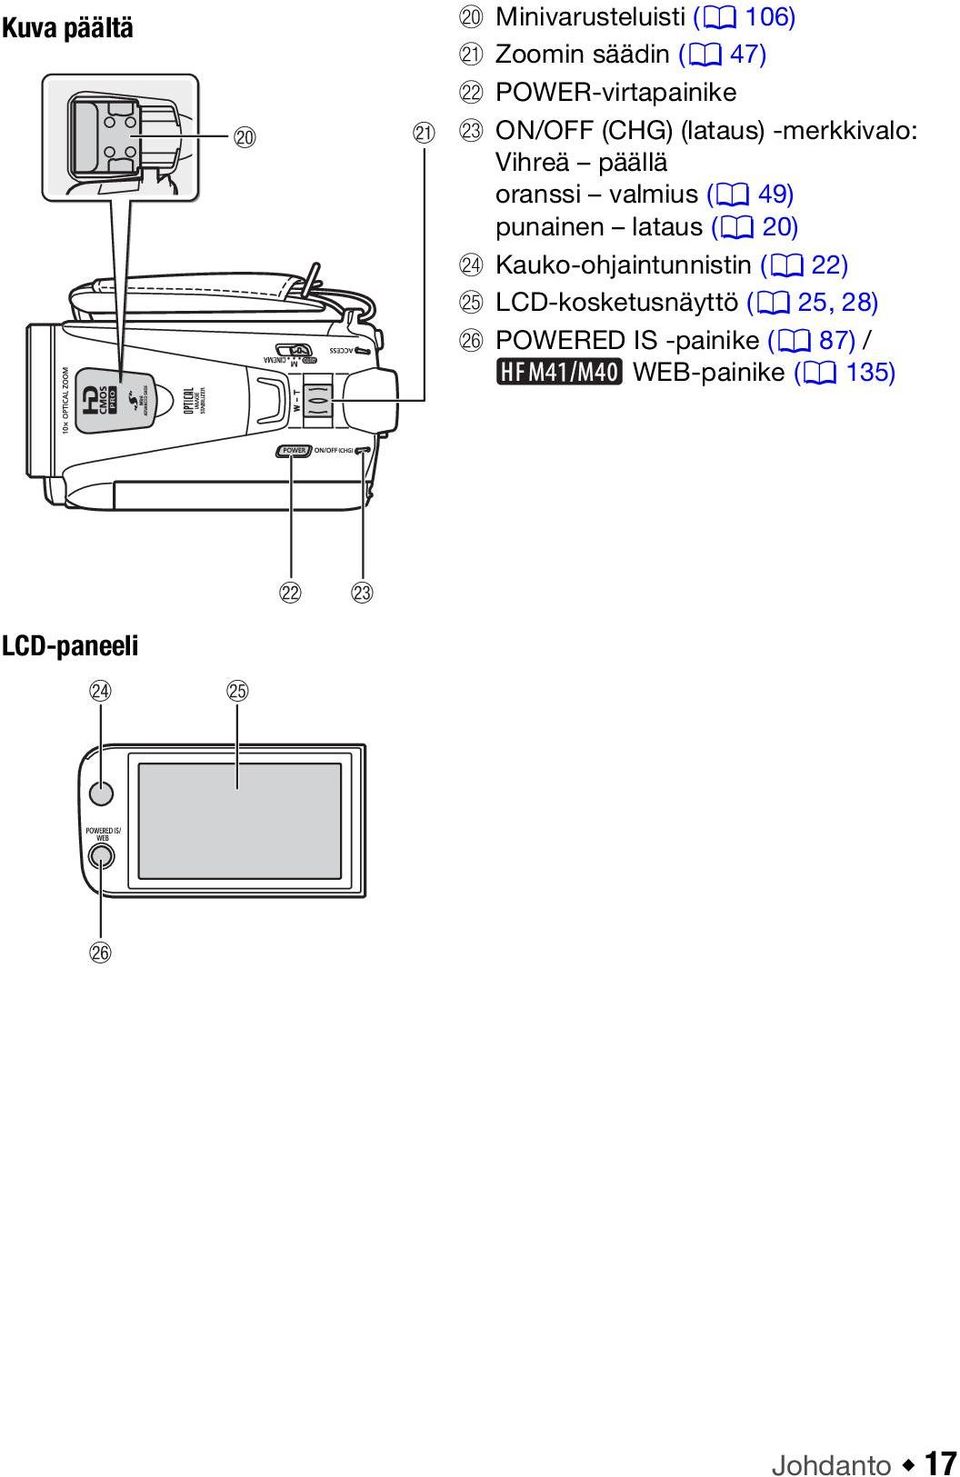 (0 49) punainen lataus (0 20) Sf Kauko-ohjaintunnistin (0 22) Sg LCD-kosketusnäyttö (0